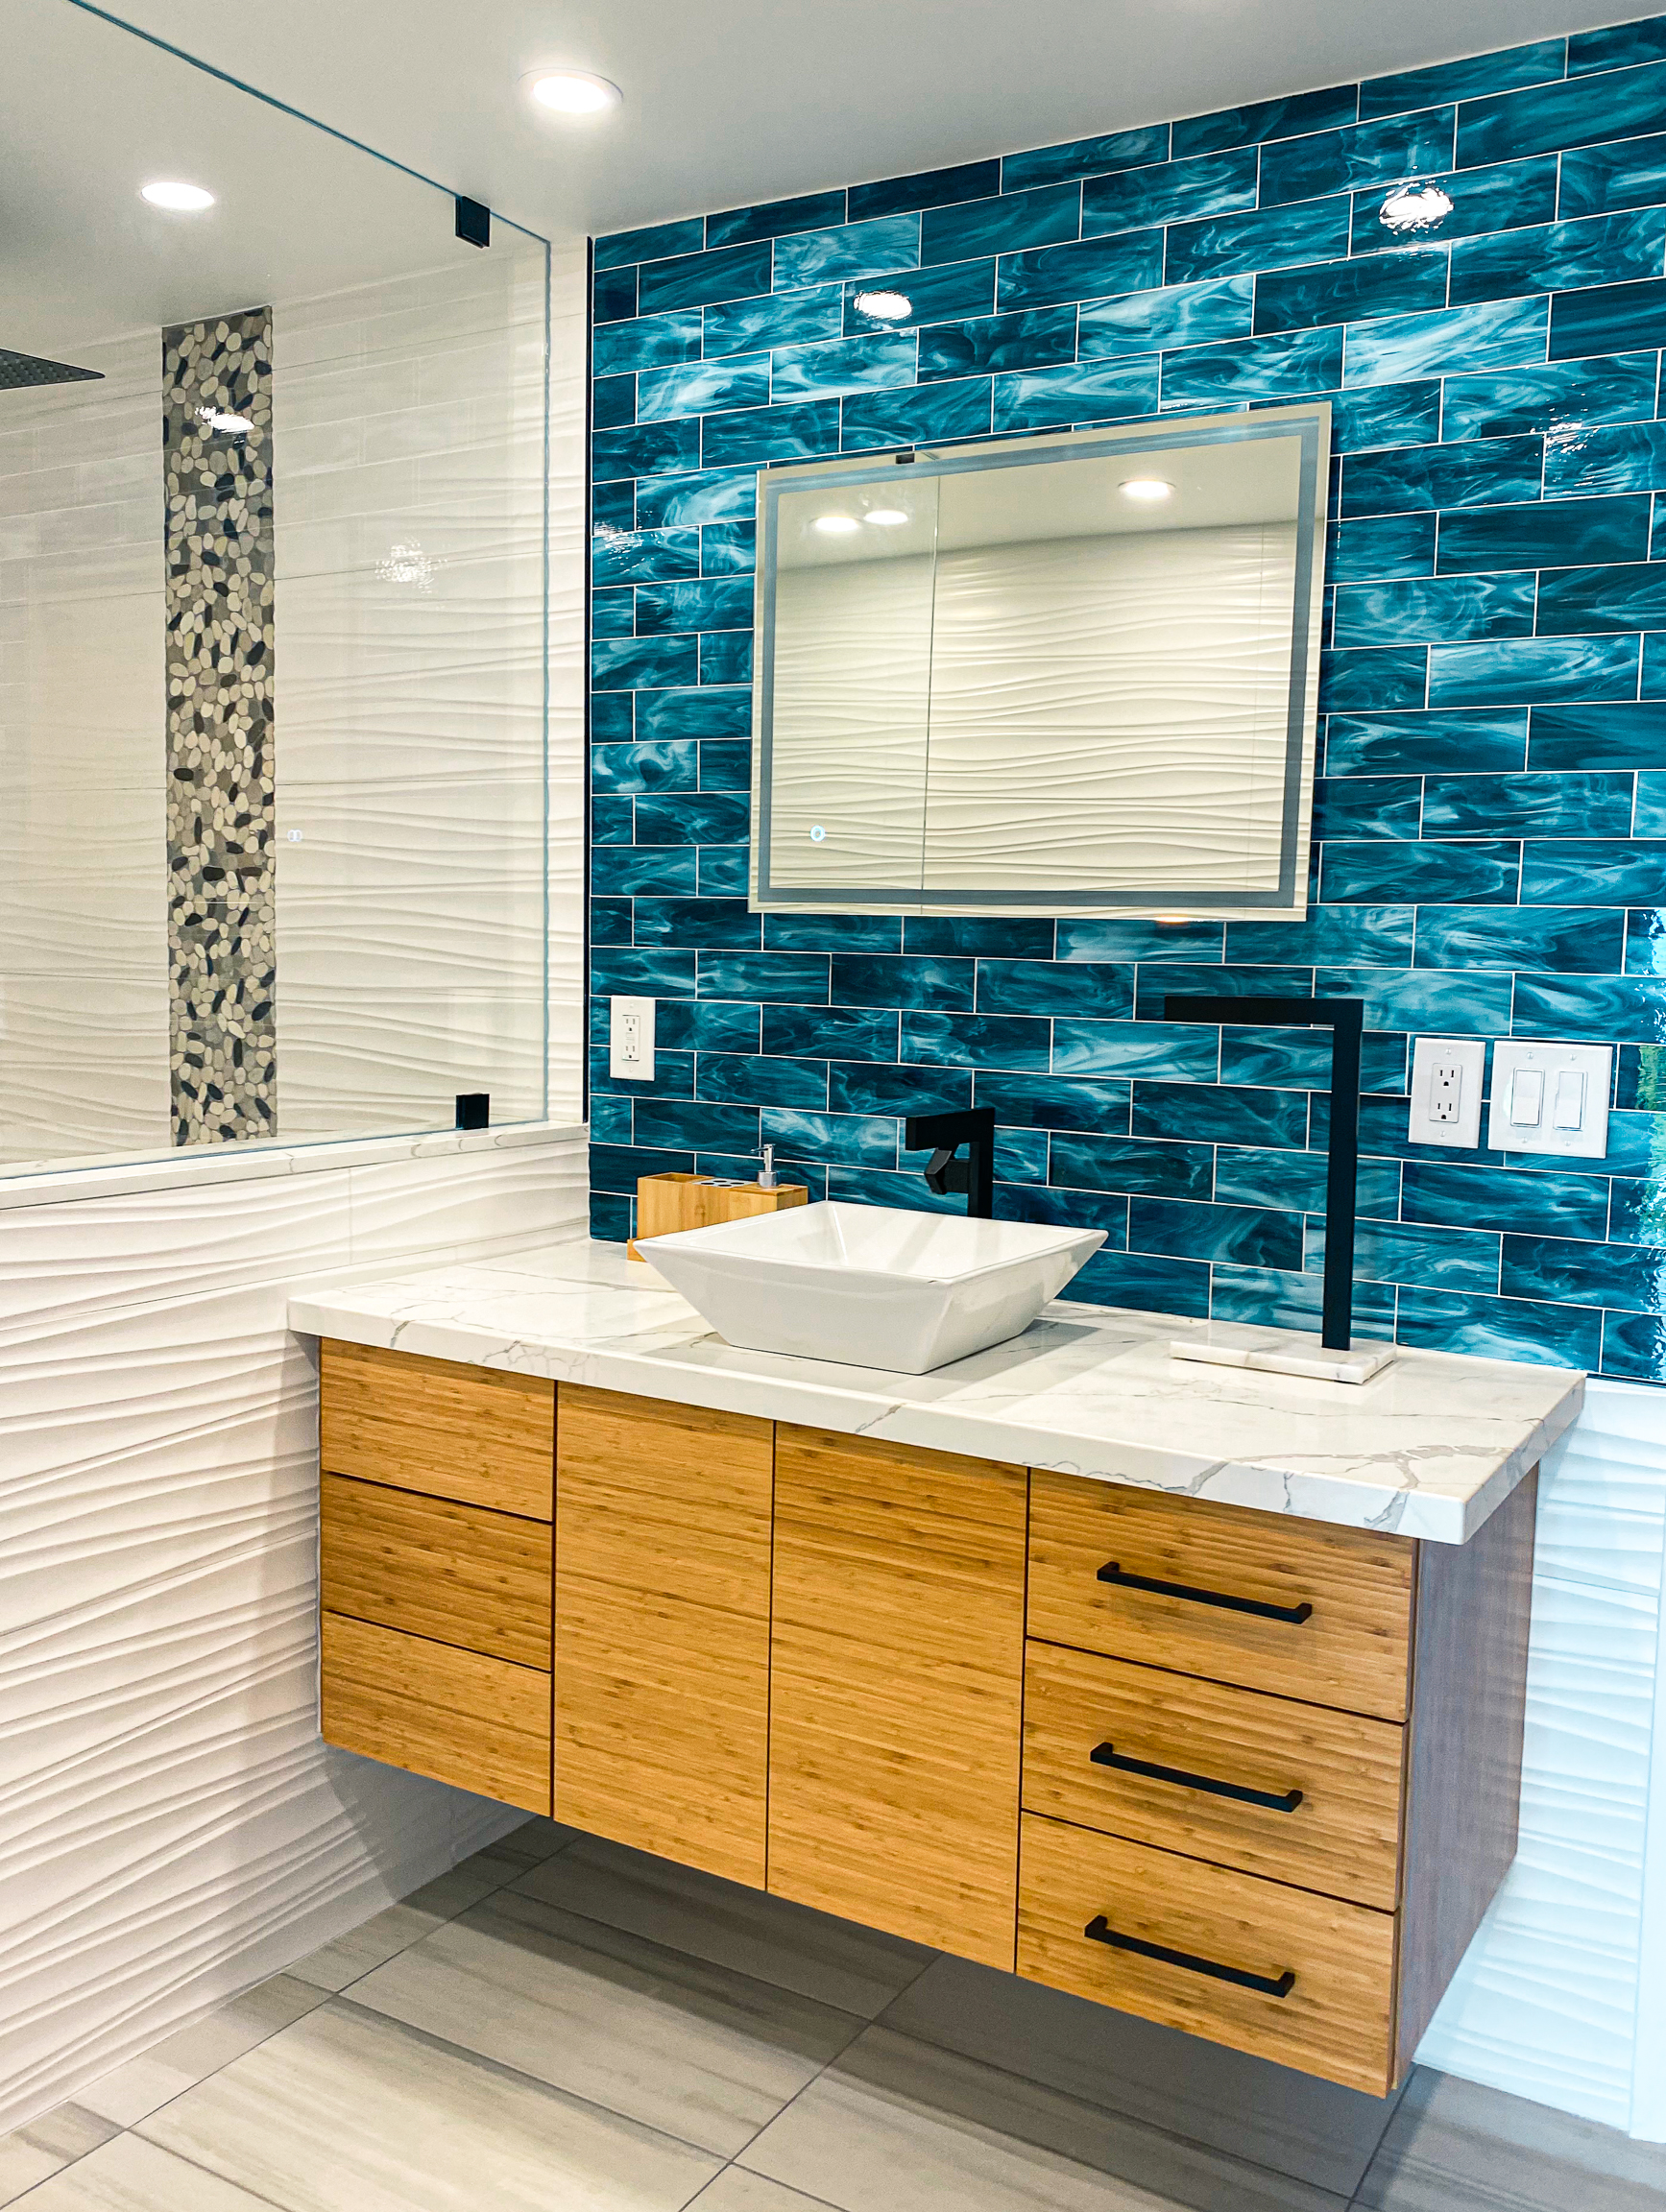 Maui Custom Tile Works bathroom design